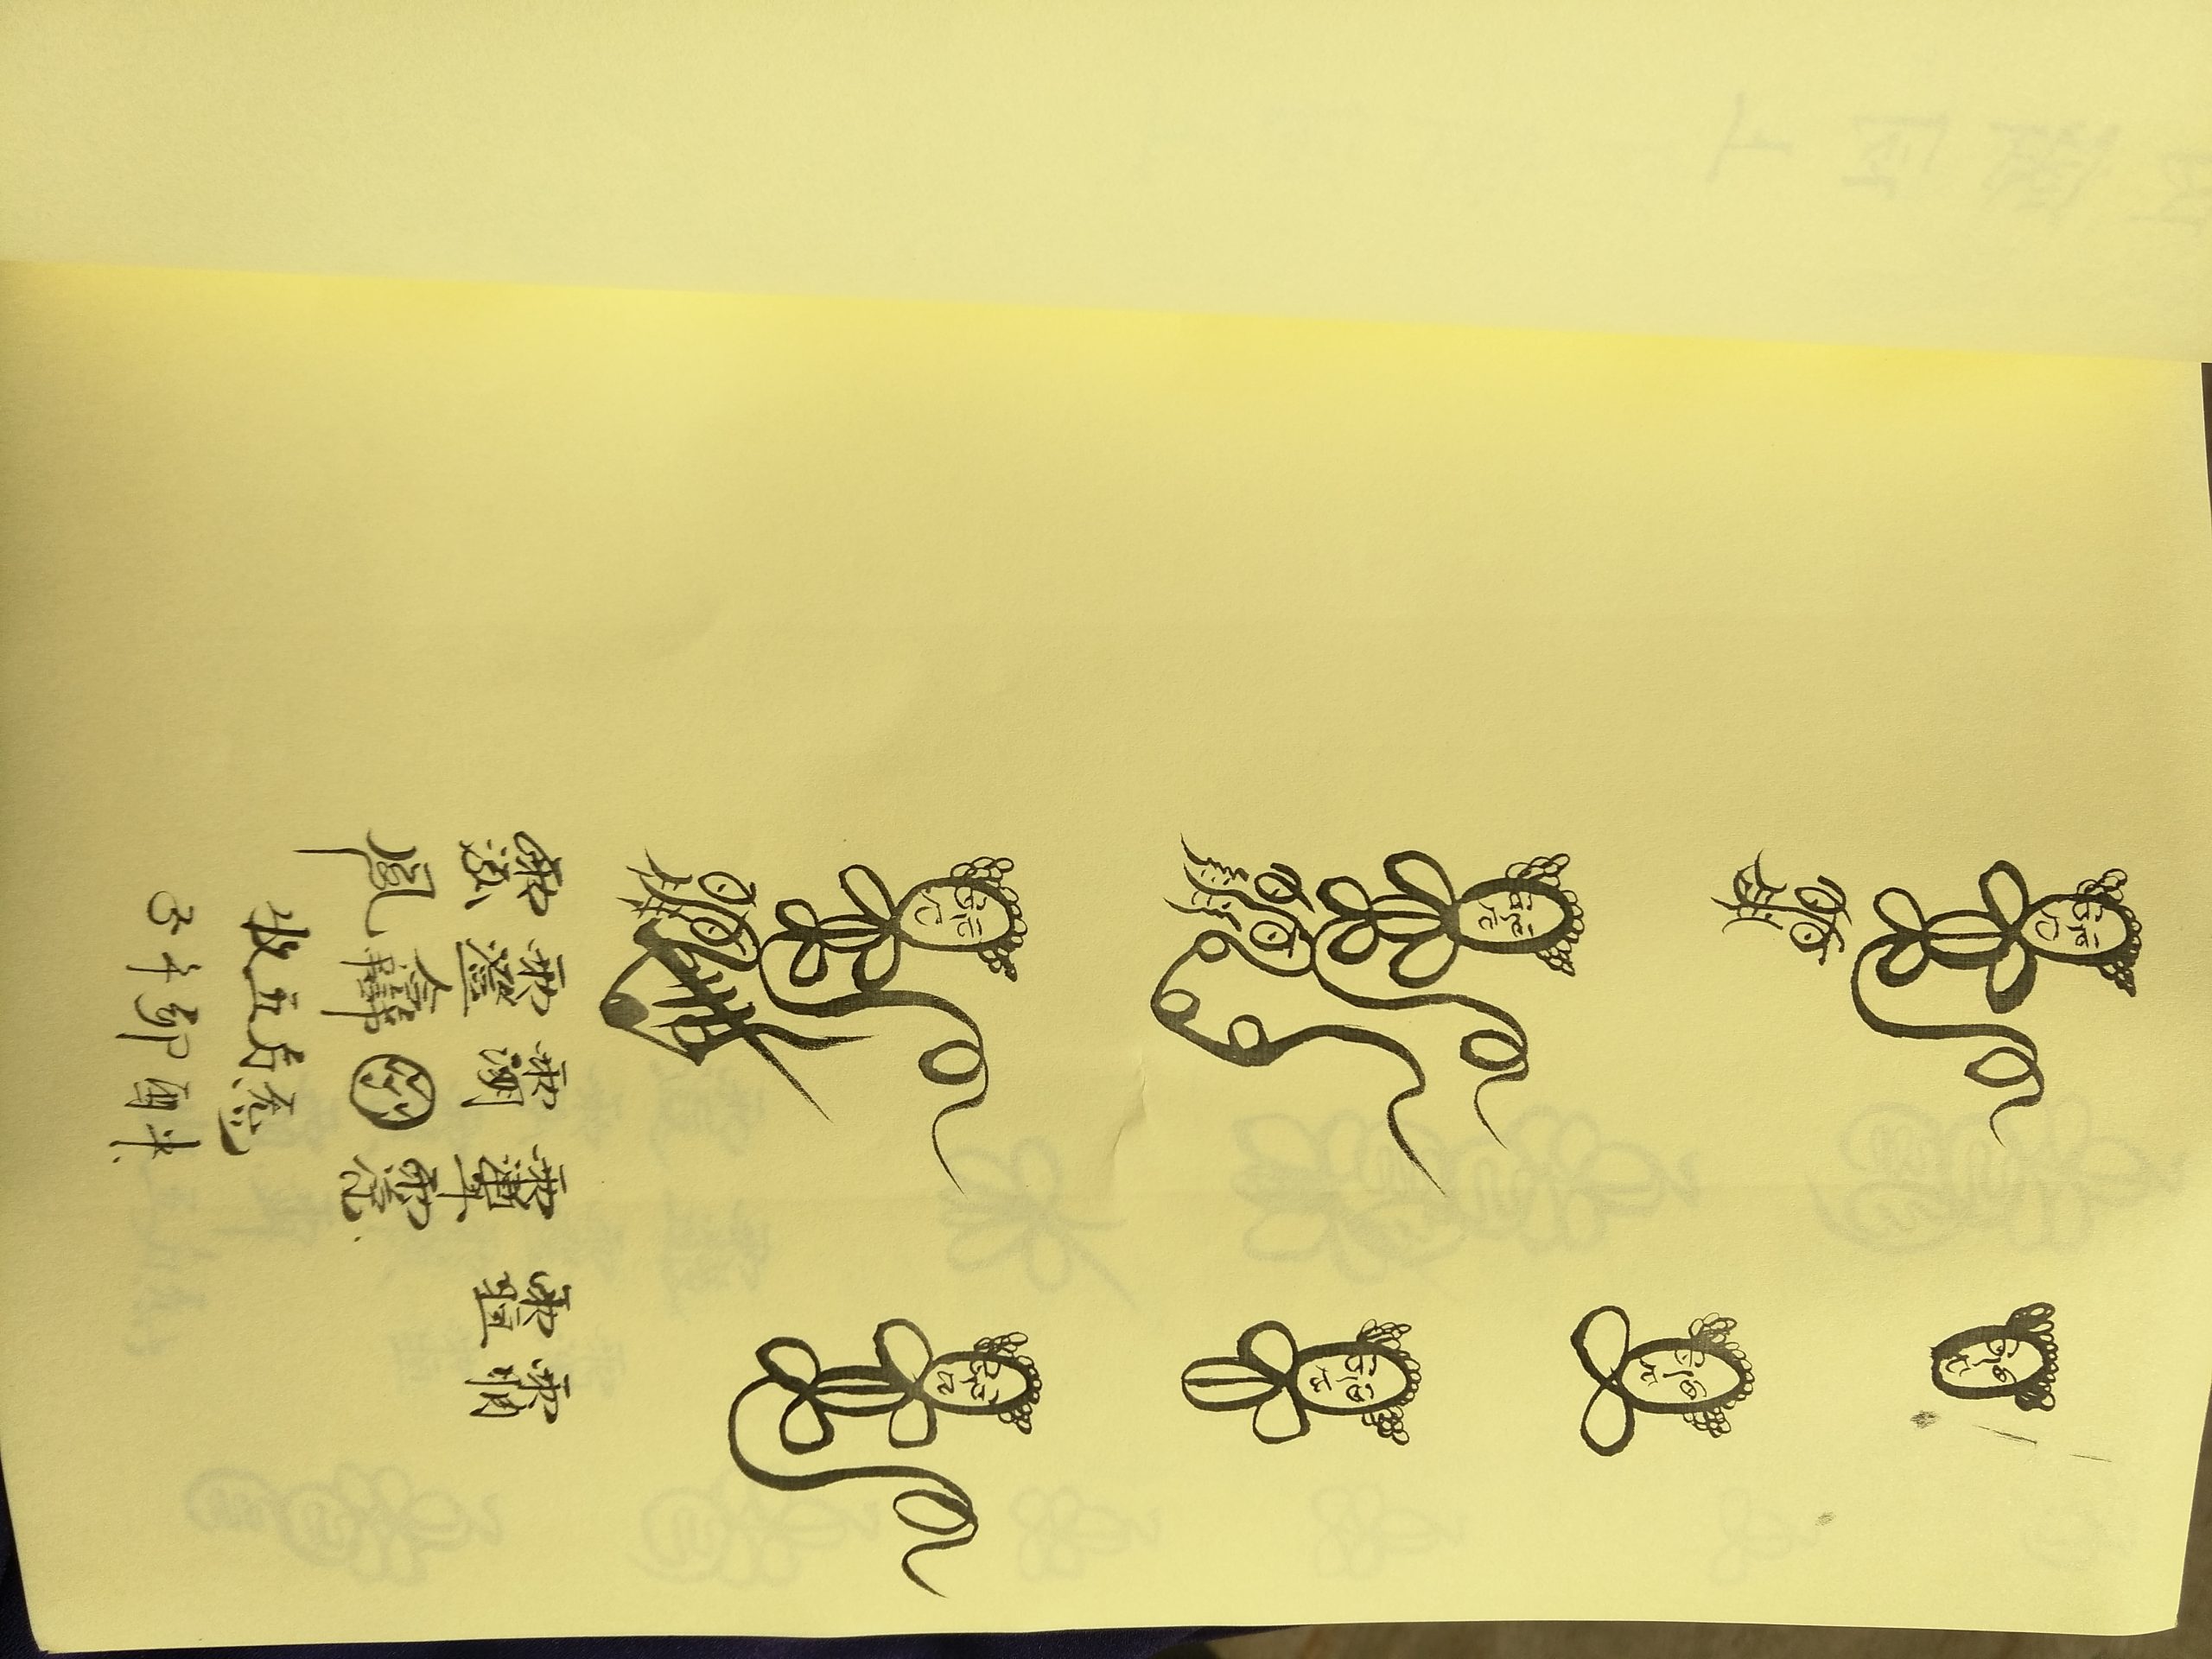 符咒学习笔记初步整理